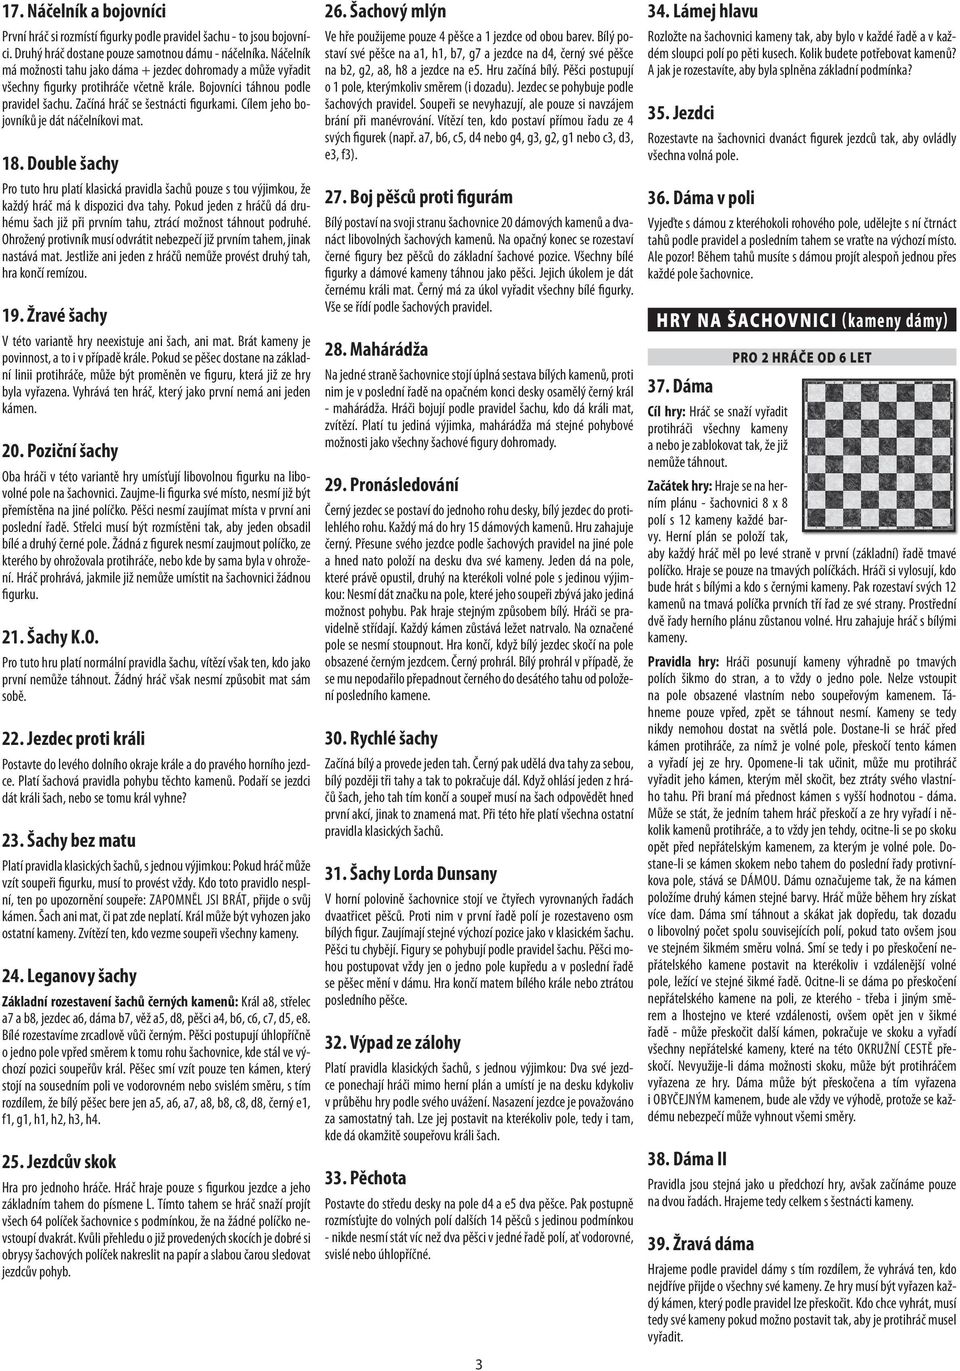 Cílem jeho bojovníků je dát náčelníkovi mat. 18. Double šachy Pro tuto hru platí klasická pravidla šachů pouze s tou výjimkou, že každý hráč má k dispozici dva tahy.